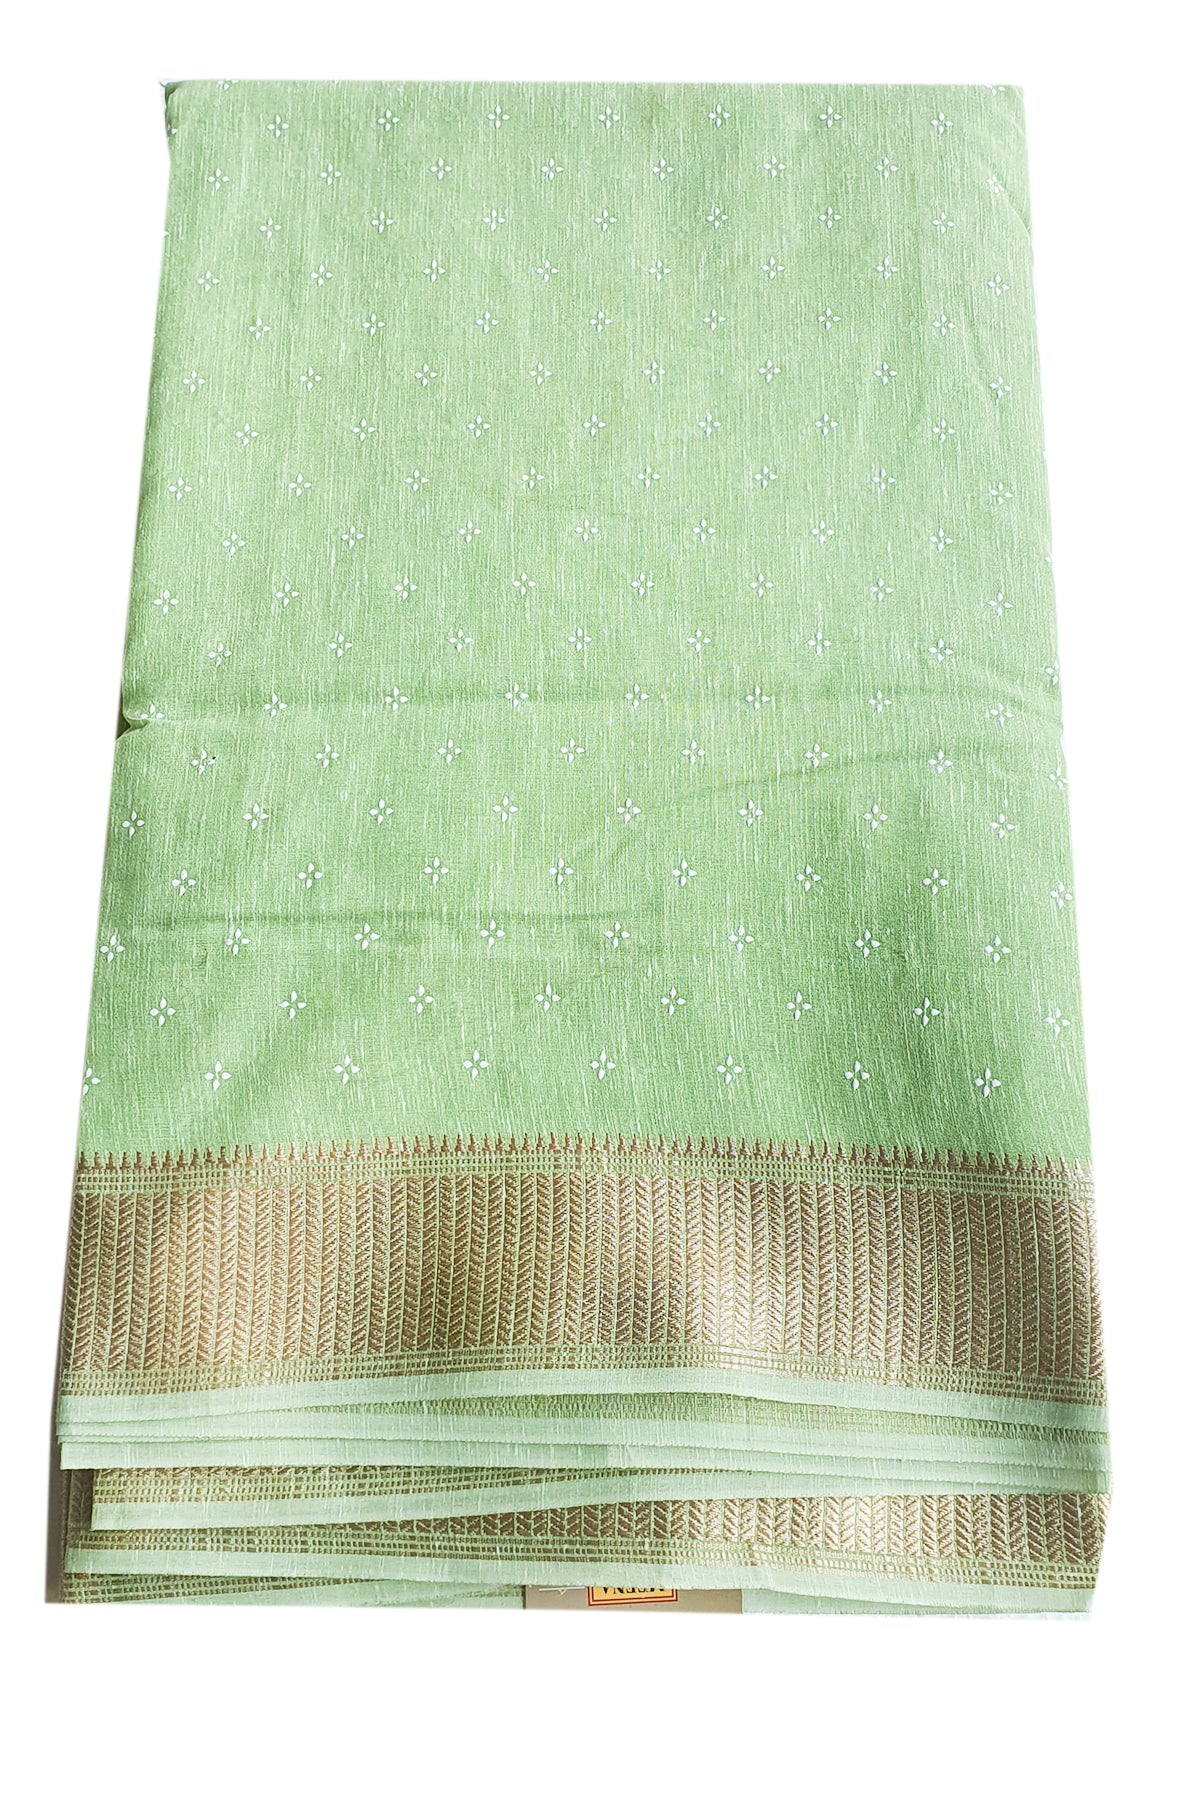 Pista Cotton Blend Zari Woven Saree With Striped Borders